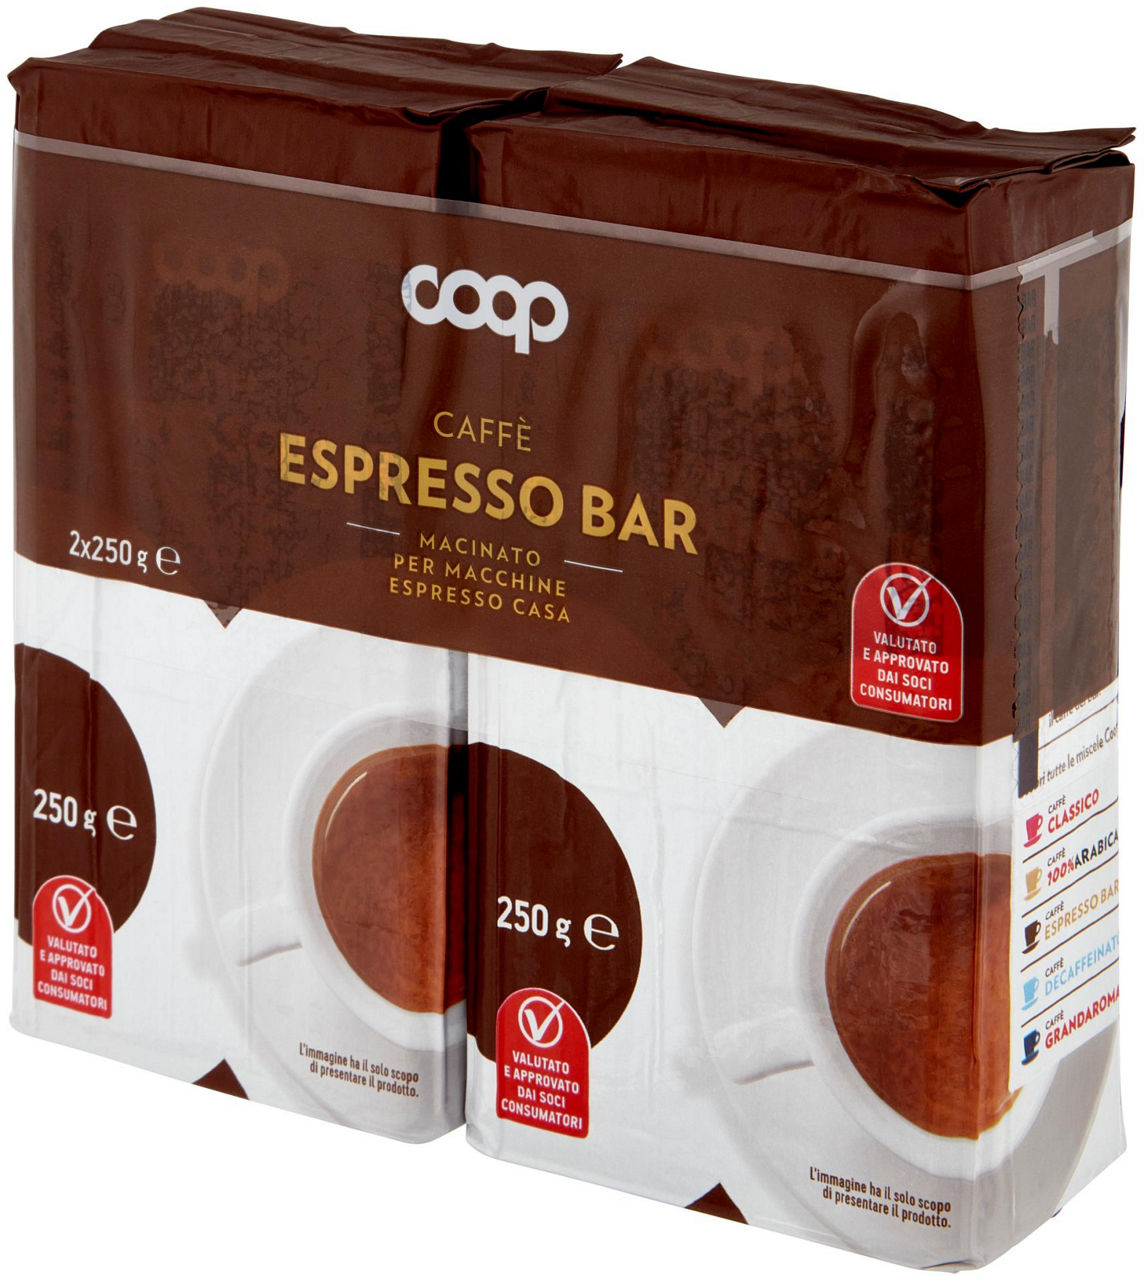 Caffè espresso bar macinato per macchine espresso casa 2 x 250 g - 6